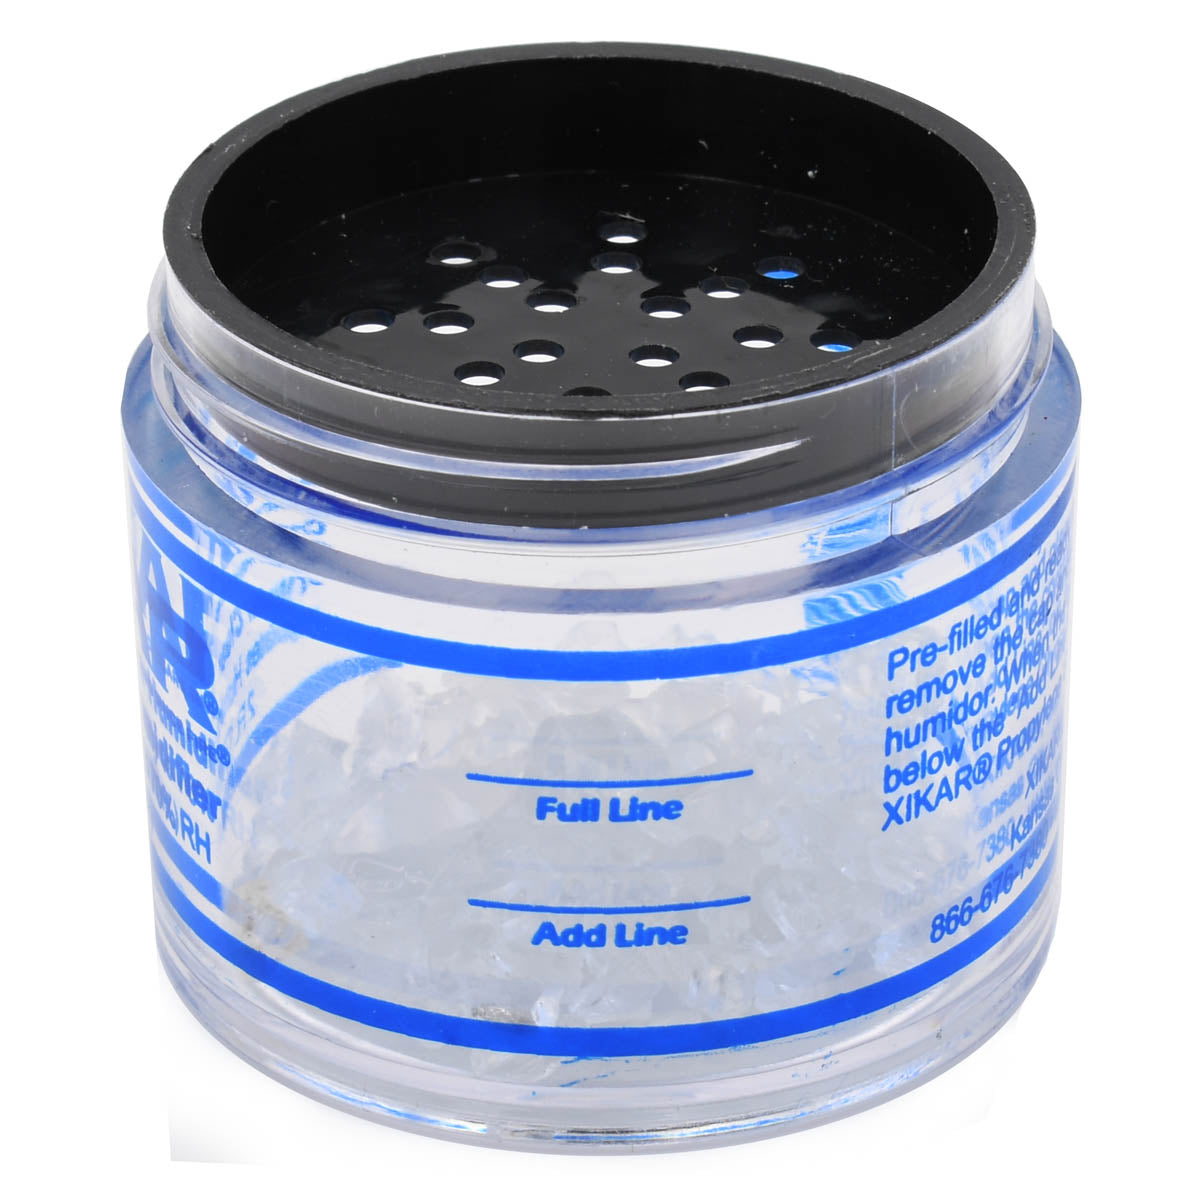 XIKAR® Crystal Humidifier Jar (2oz)